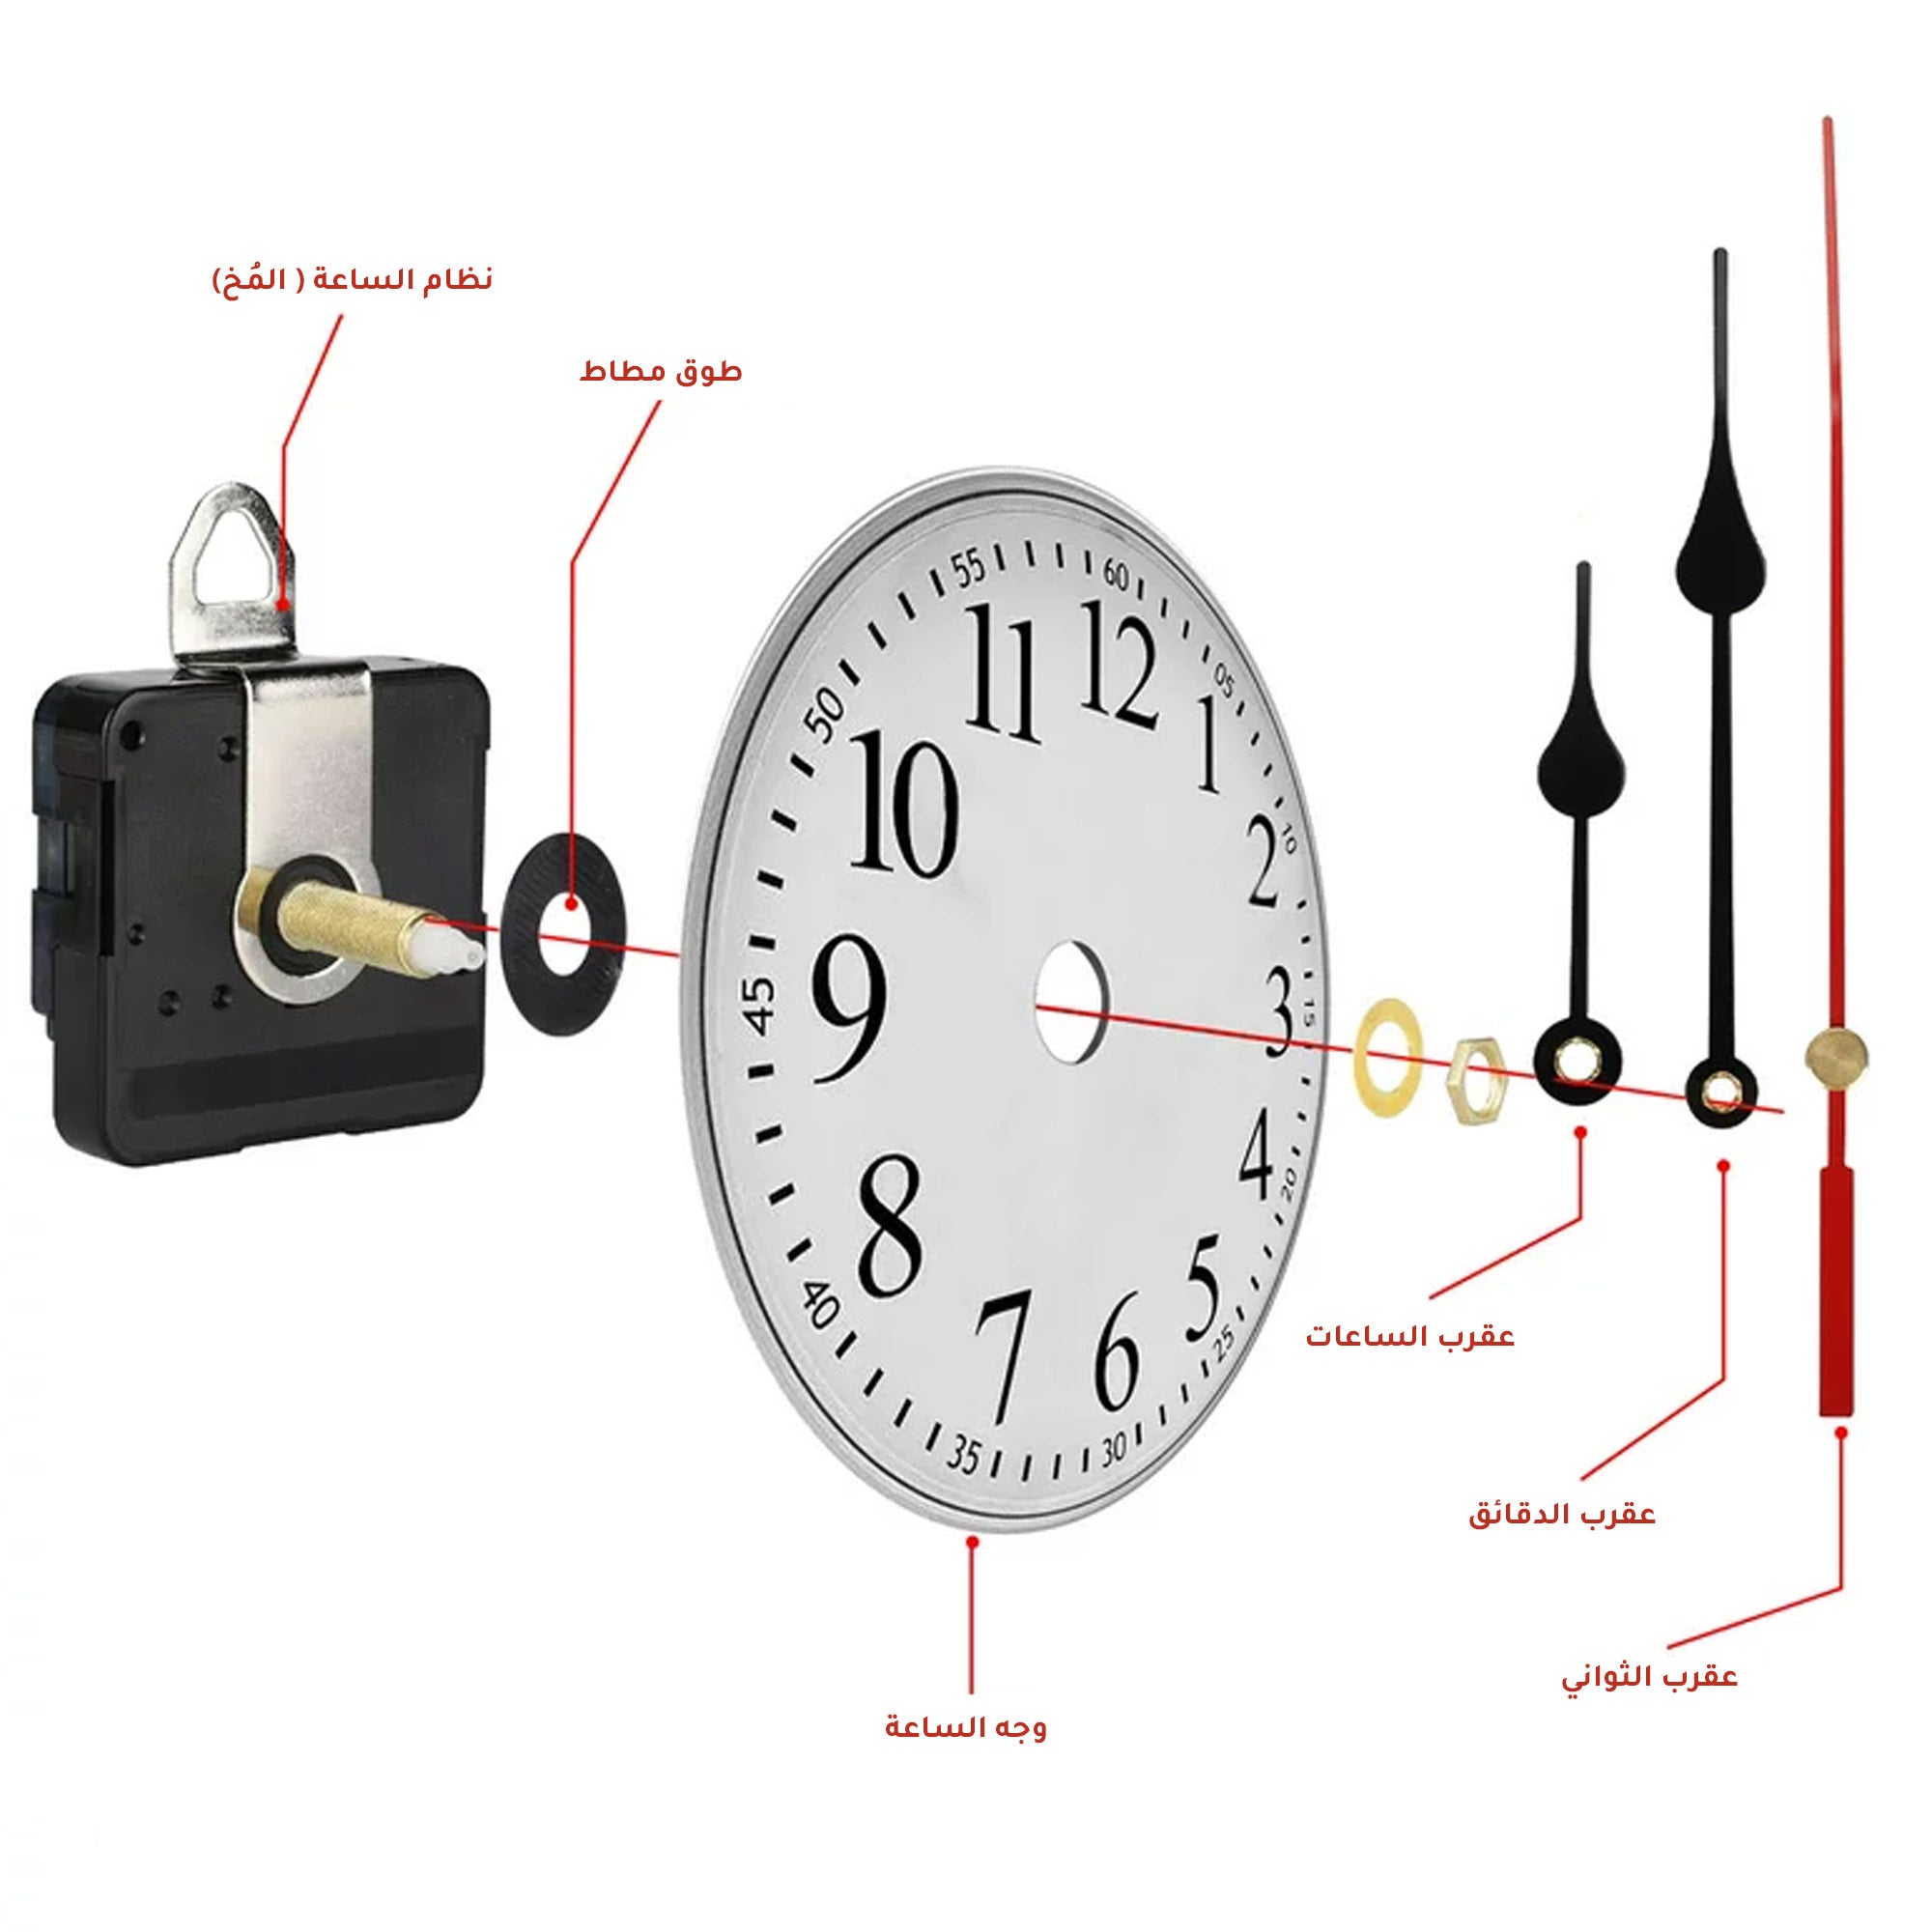 Woodberg - باكيج آلية الساعة (مُحرك الساعة + عقارب الساعة) مع أرقام ذهبية لصنع الساعات 